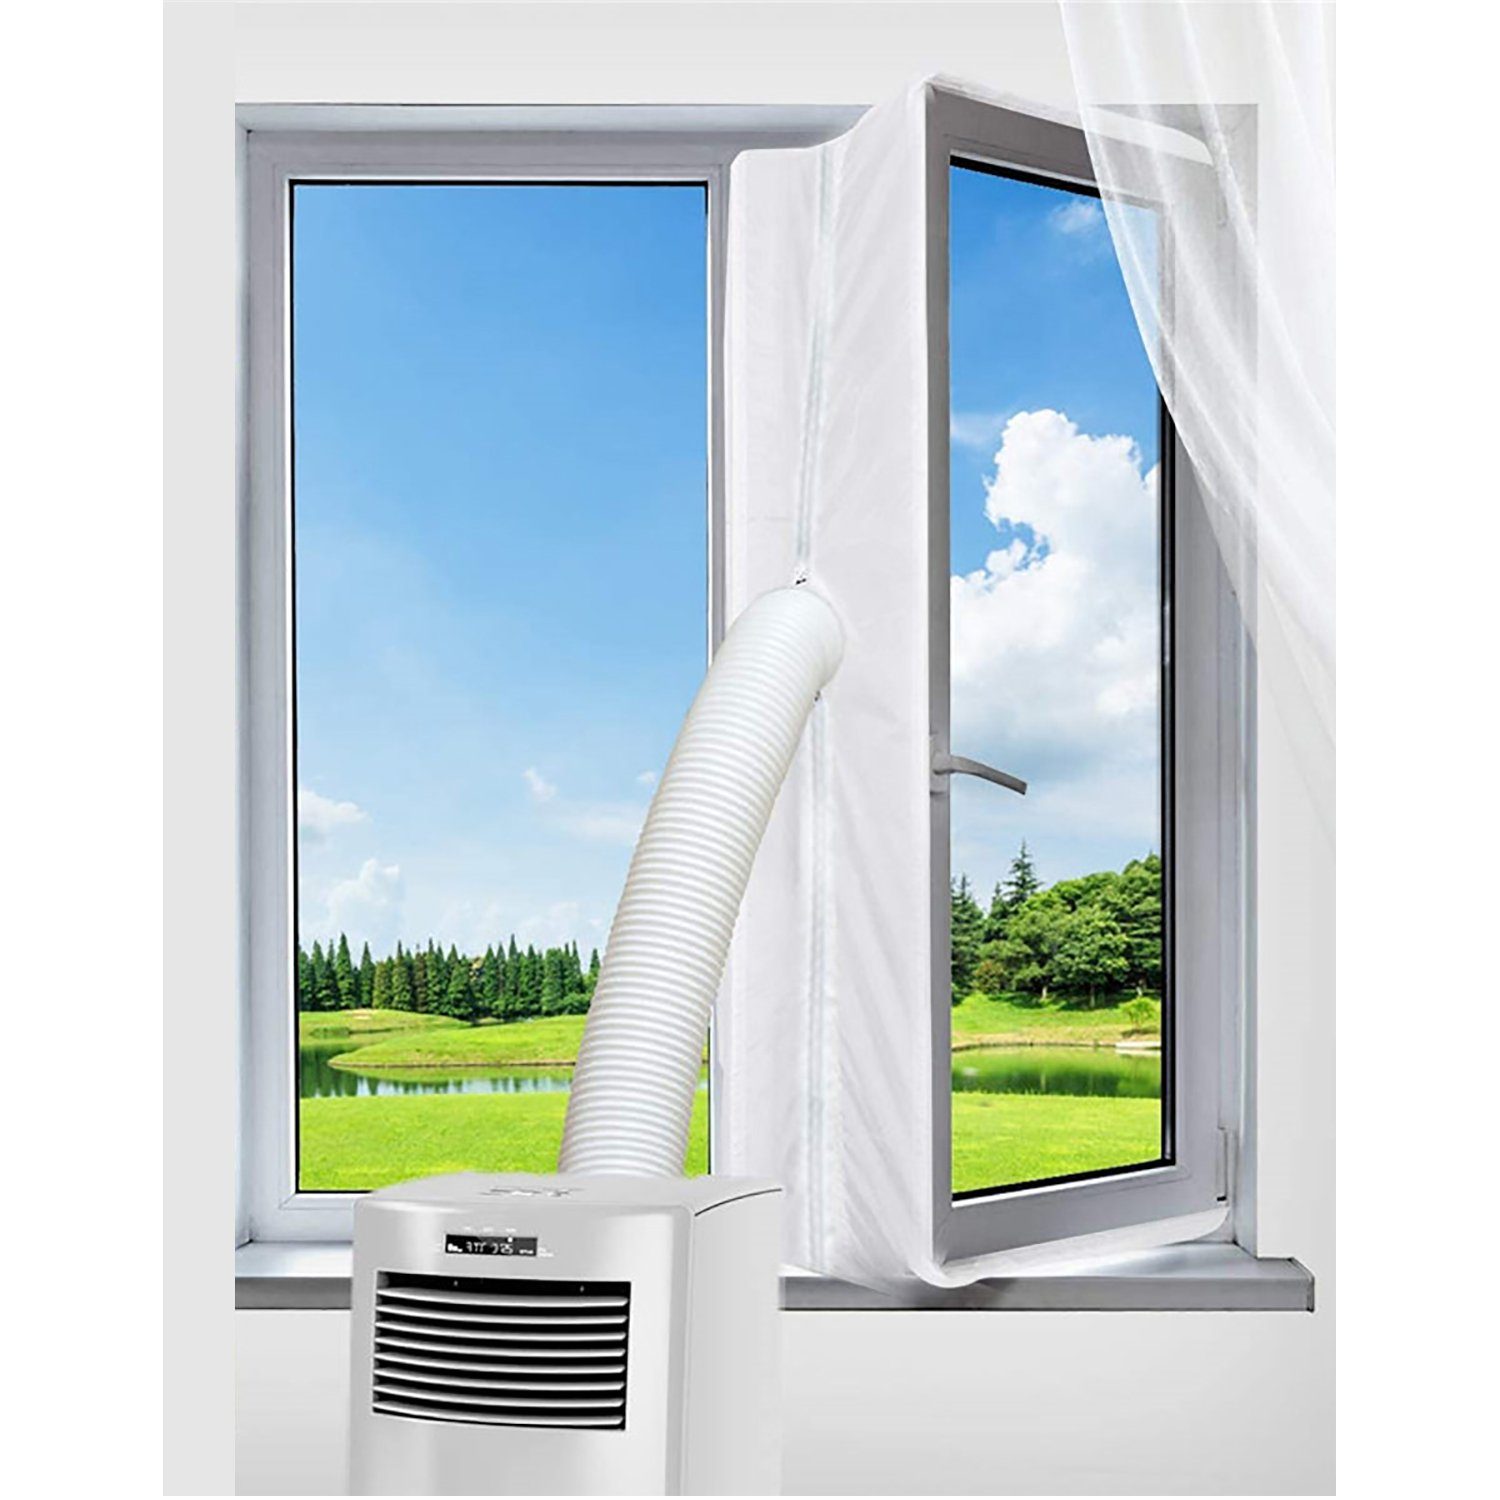 Erweiterung Mobile 3 für Fensterkit Zubehör Stop, Zubehör Eindringen Abdichtung Klimageräte Trockner / Hot verhindert Fenster-Set für Fenster das Meter Klimagerät, TPFLiving und Air von Außenhitze,